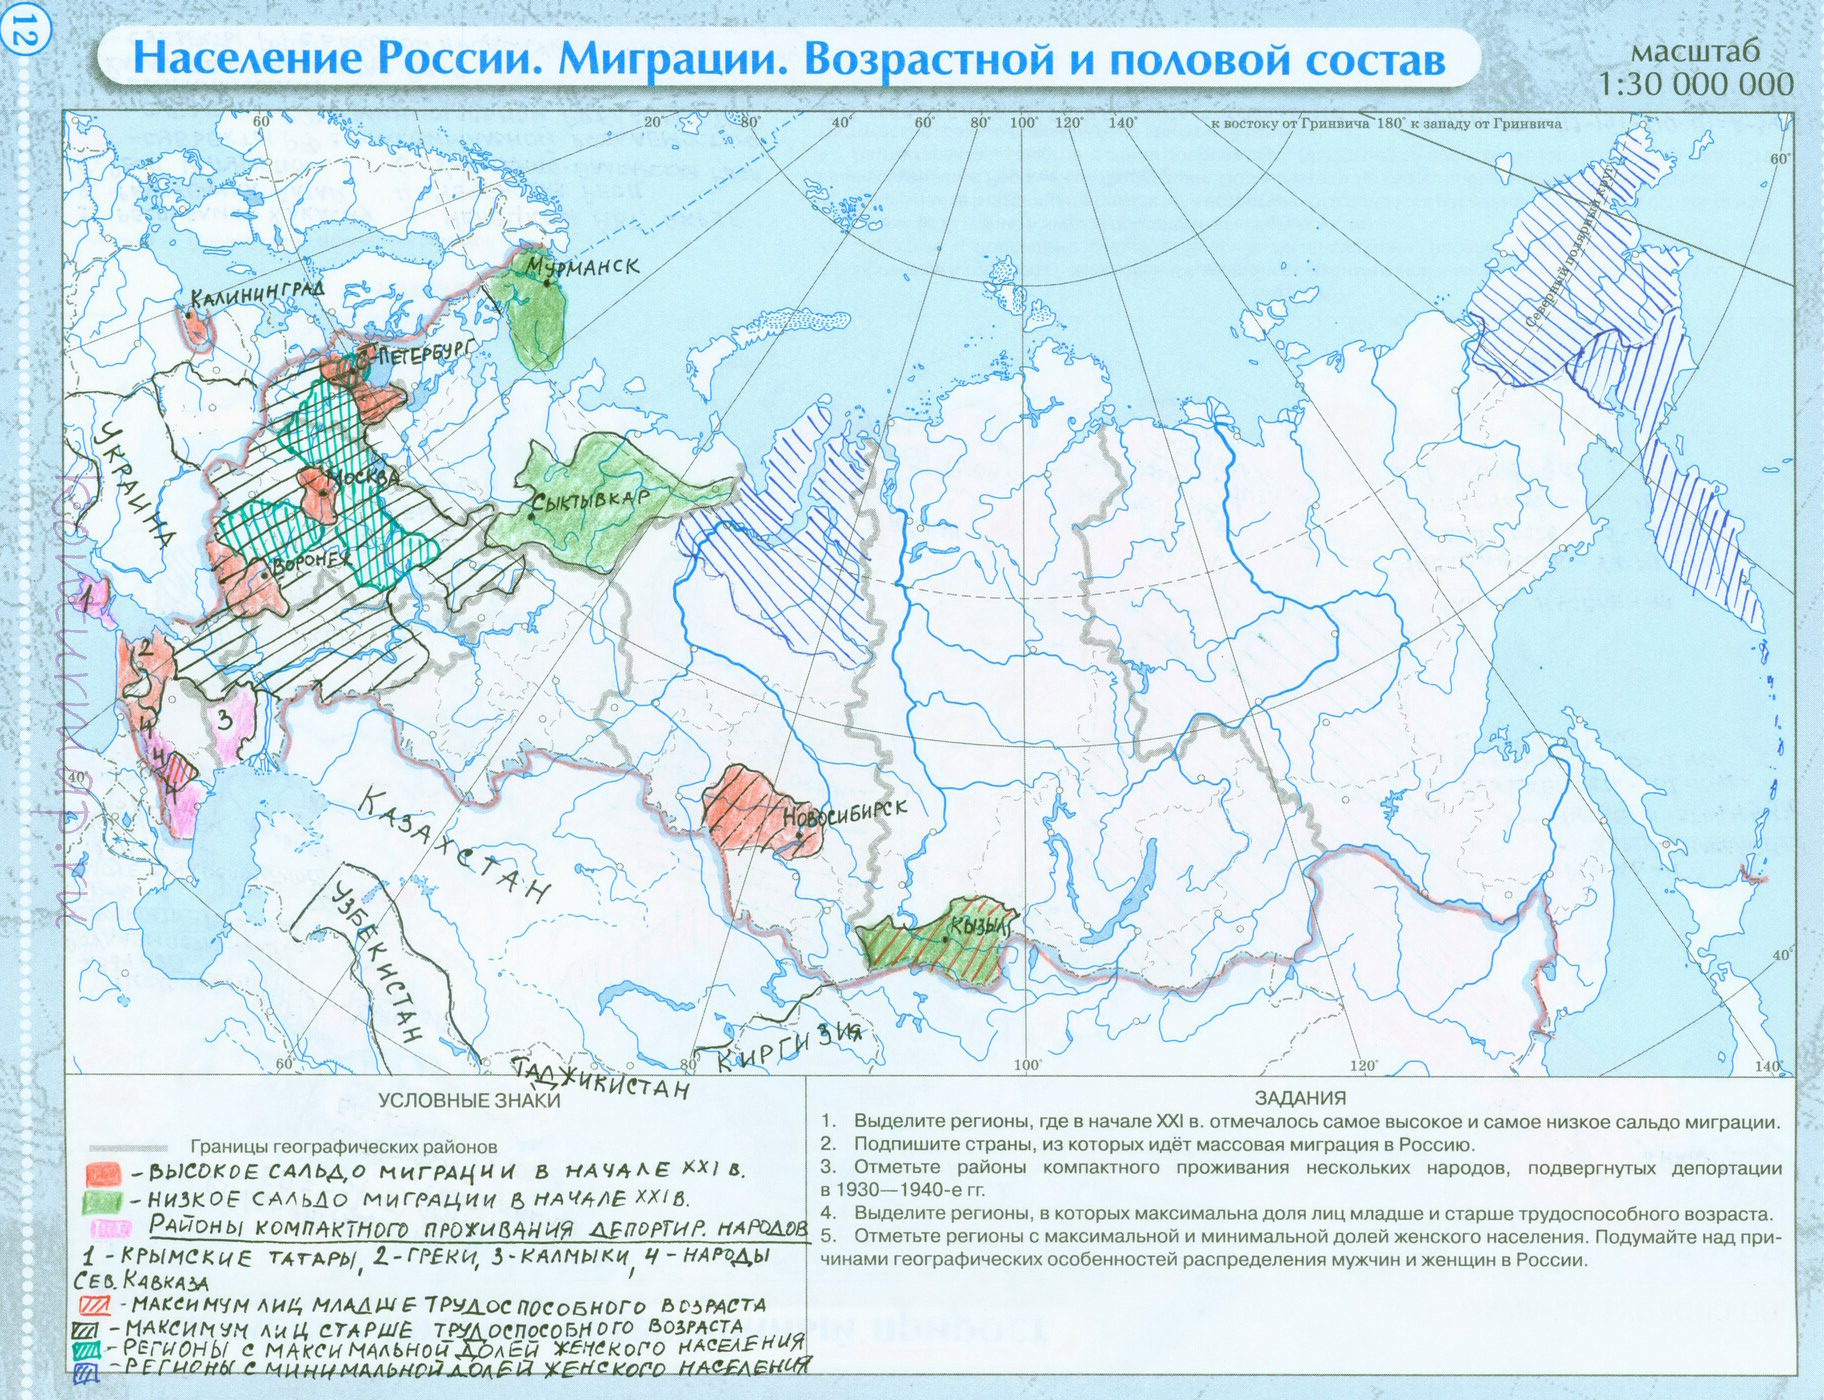 Гдз по контурным картам 8 класс внутренние воды россии